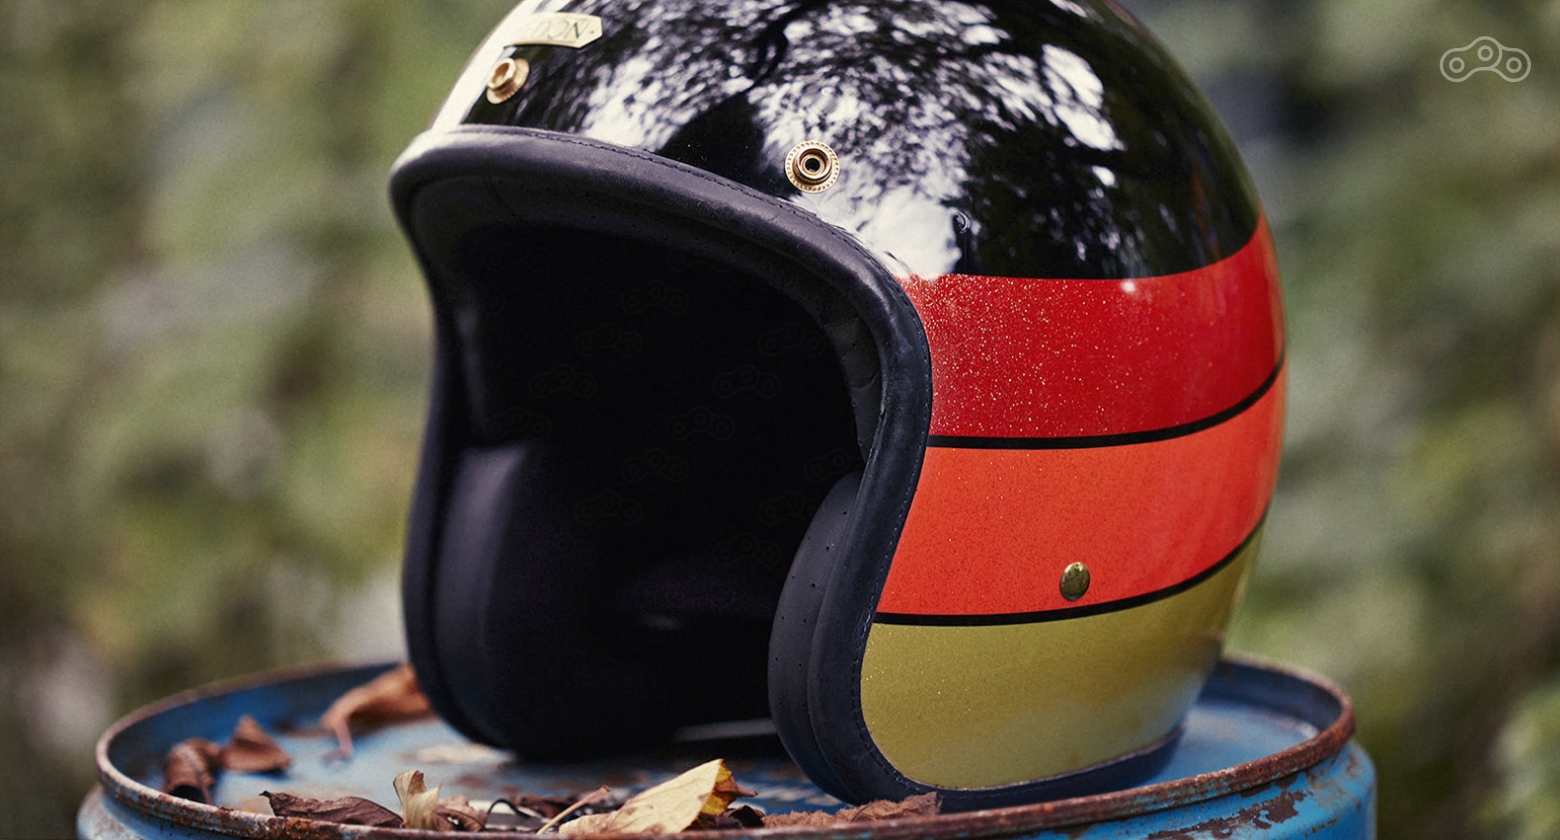 Современный открытый шлем может оснащаться дополнительным опциями в виде солнцезащитного козырька, визора или фирменных очков